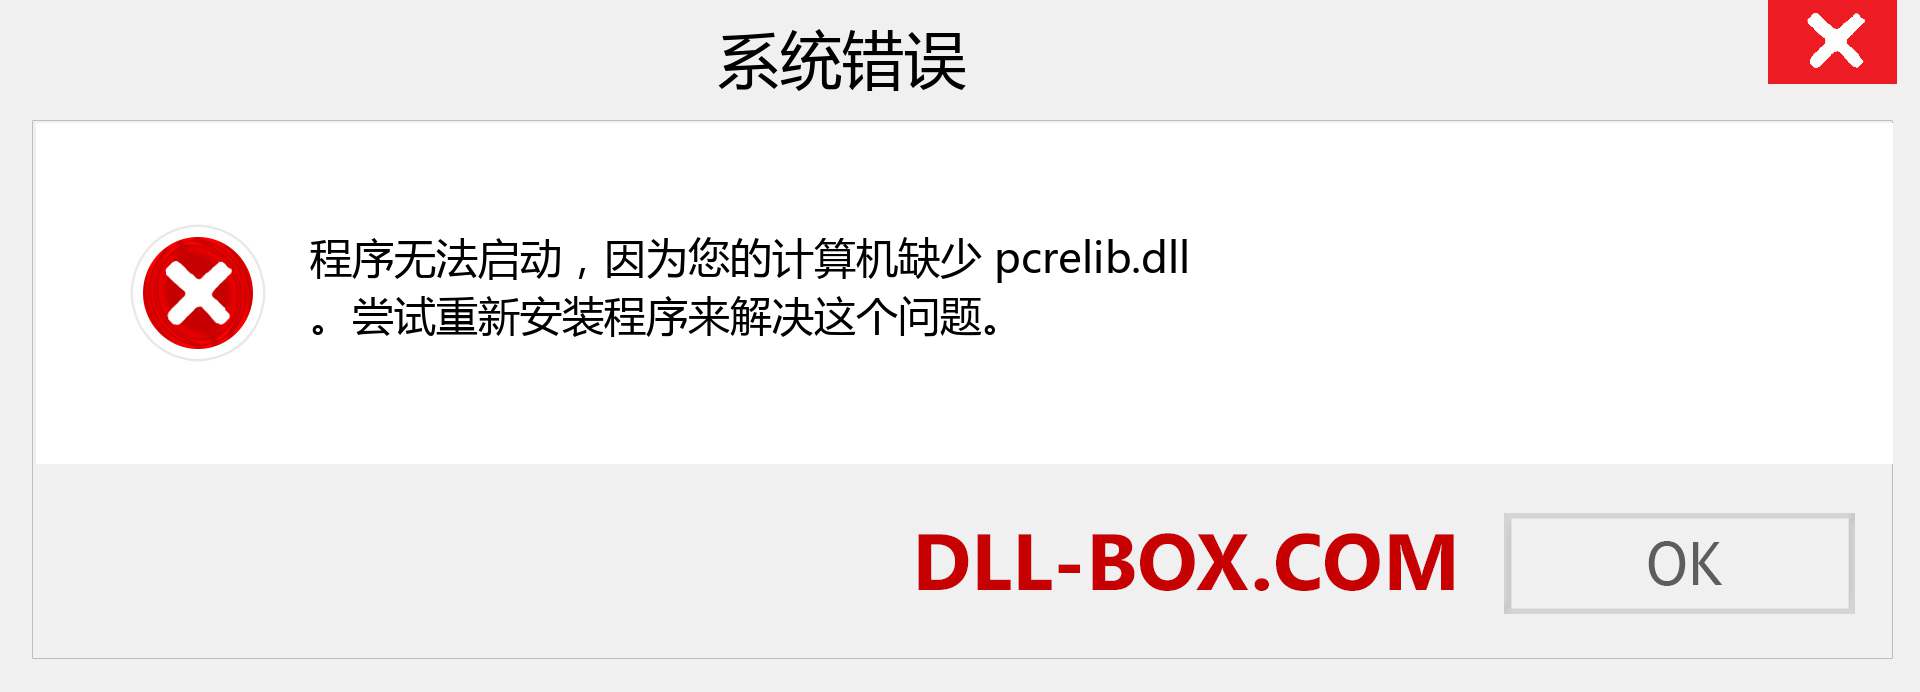 pcrelib.dll 文件丢失？。 适用于 Windows 7、8、10 的下载 - 修复 Windows、照片、图像上的 pcrelib dll 丢失错误